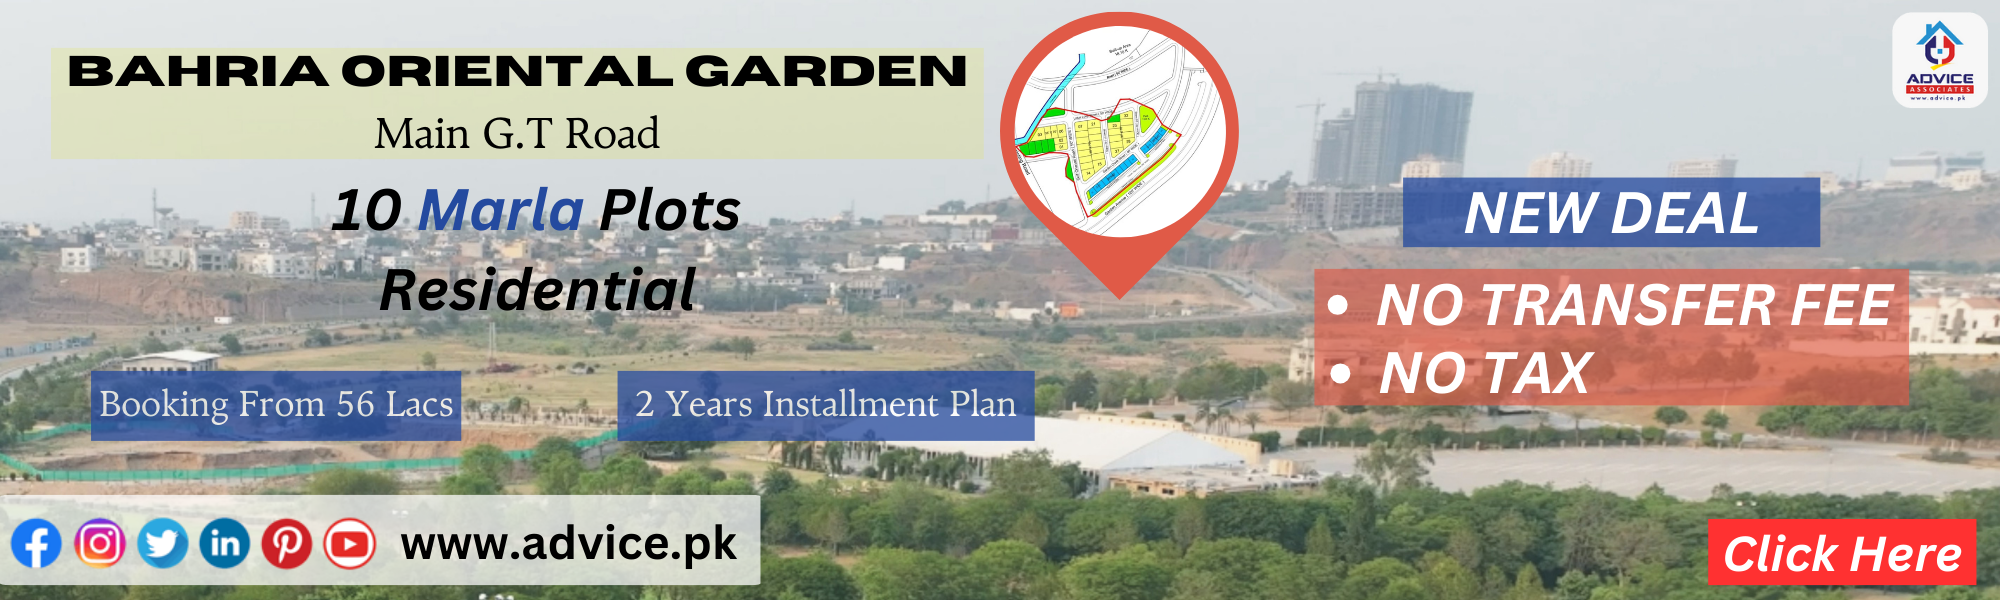 Bahria_Garden_City3.WEBP